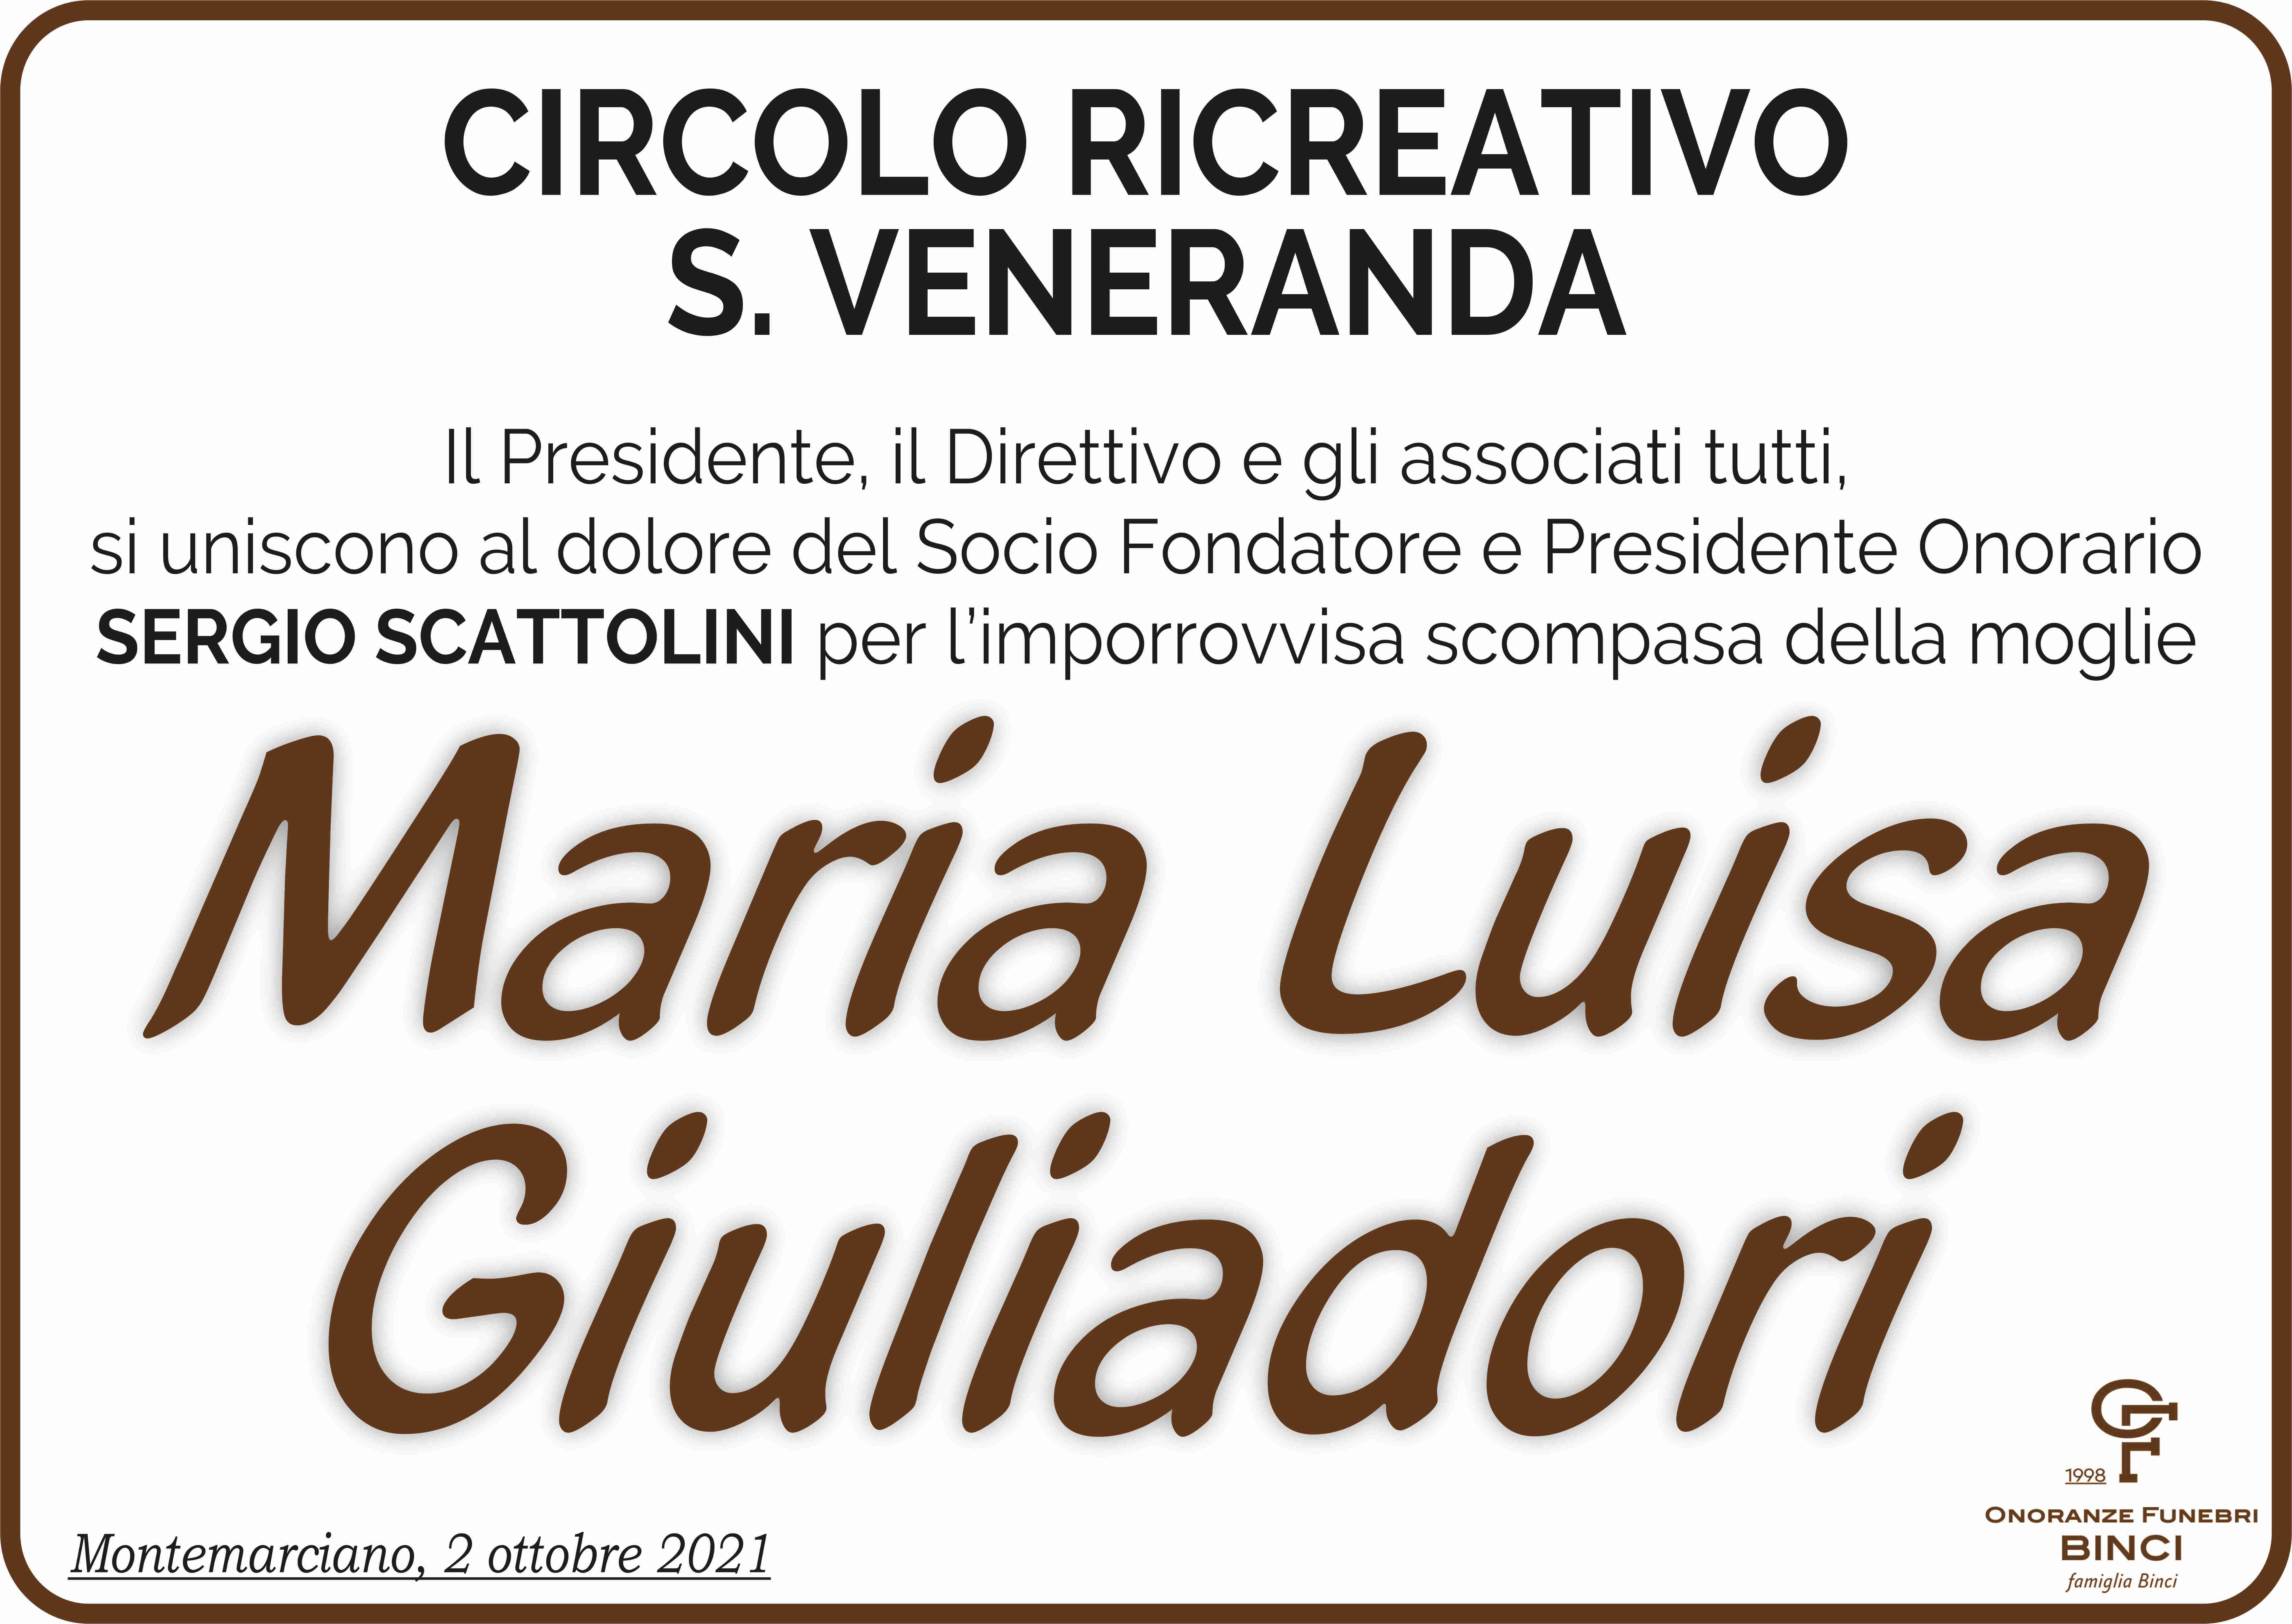 Maria Luisa Giuliadori